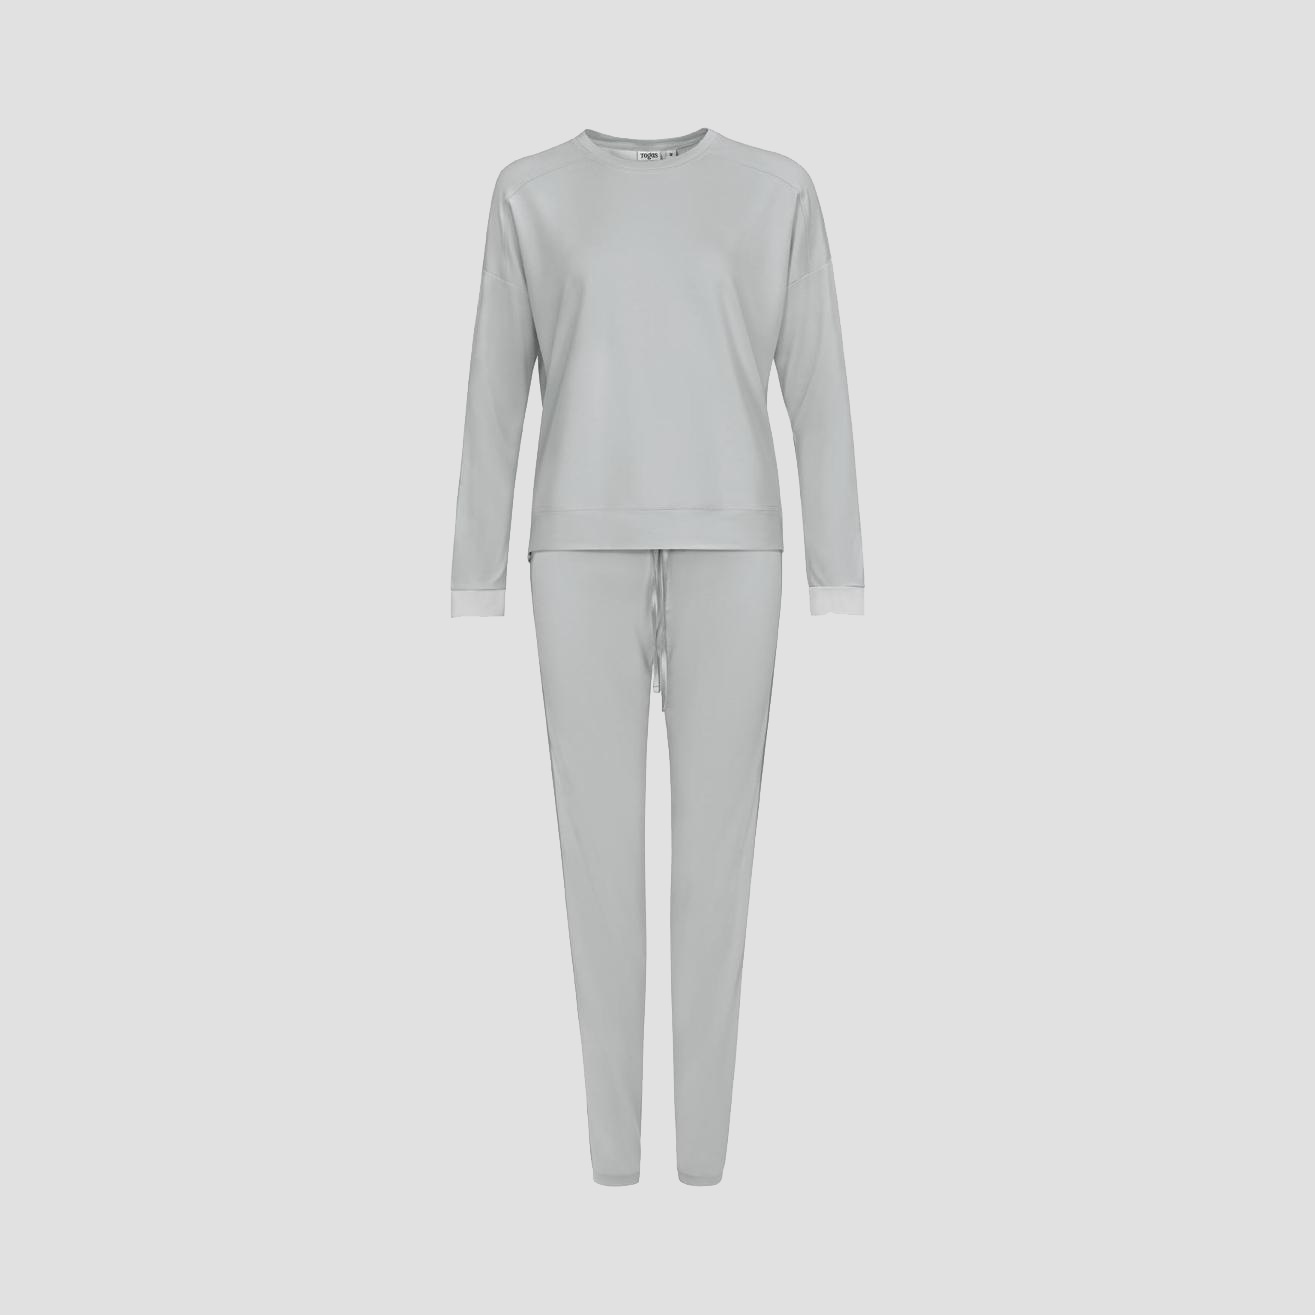 Пижама Togas Рене серая женская XS/42, цвет серый, размер 42